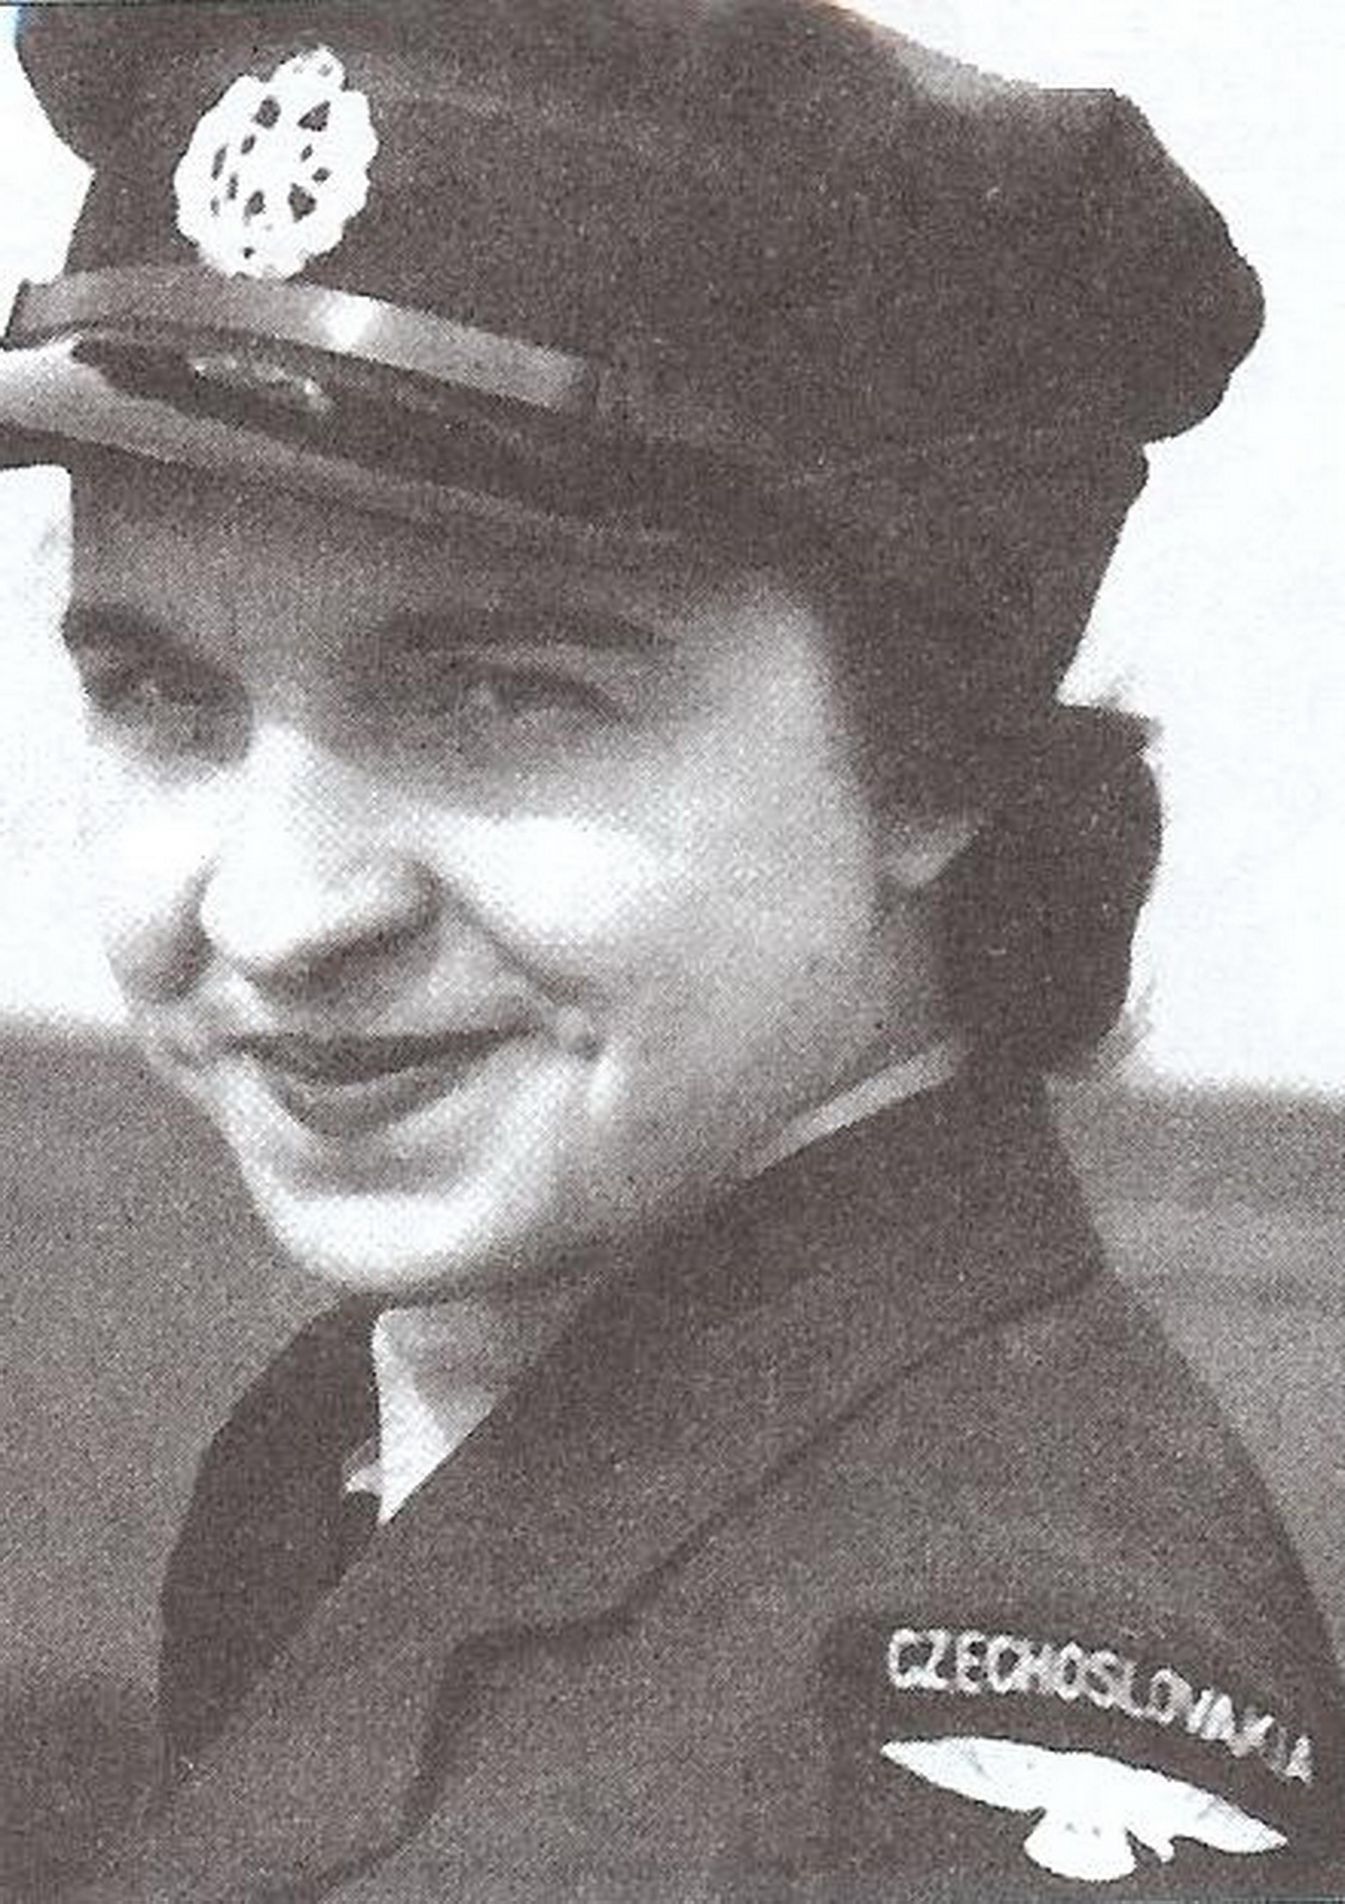 Československé ženy bojující za druhé světové války